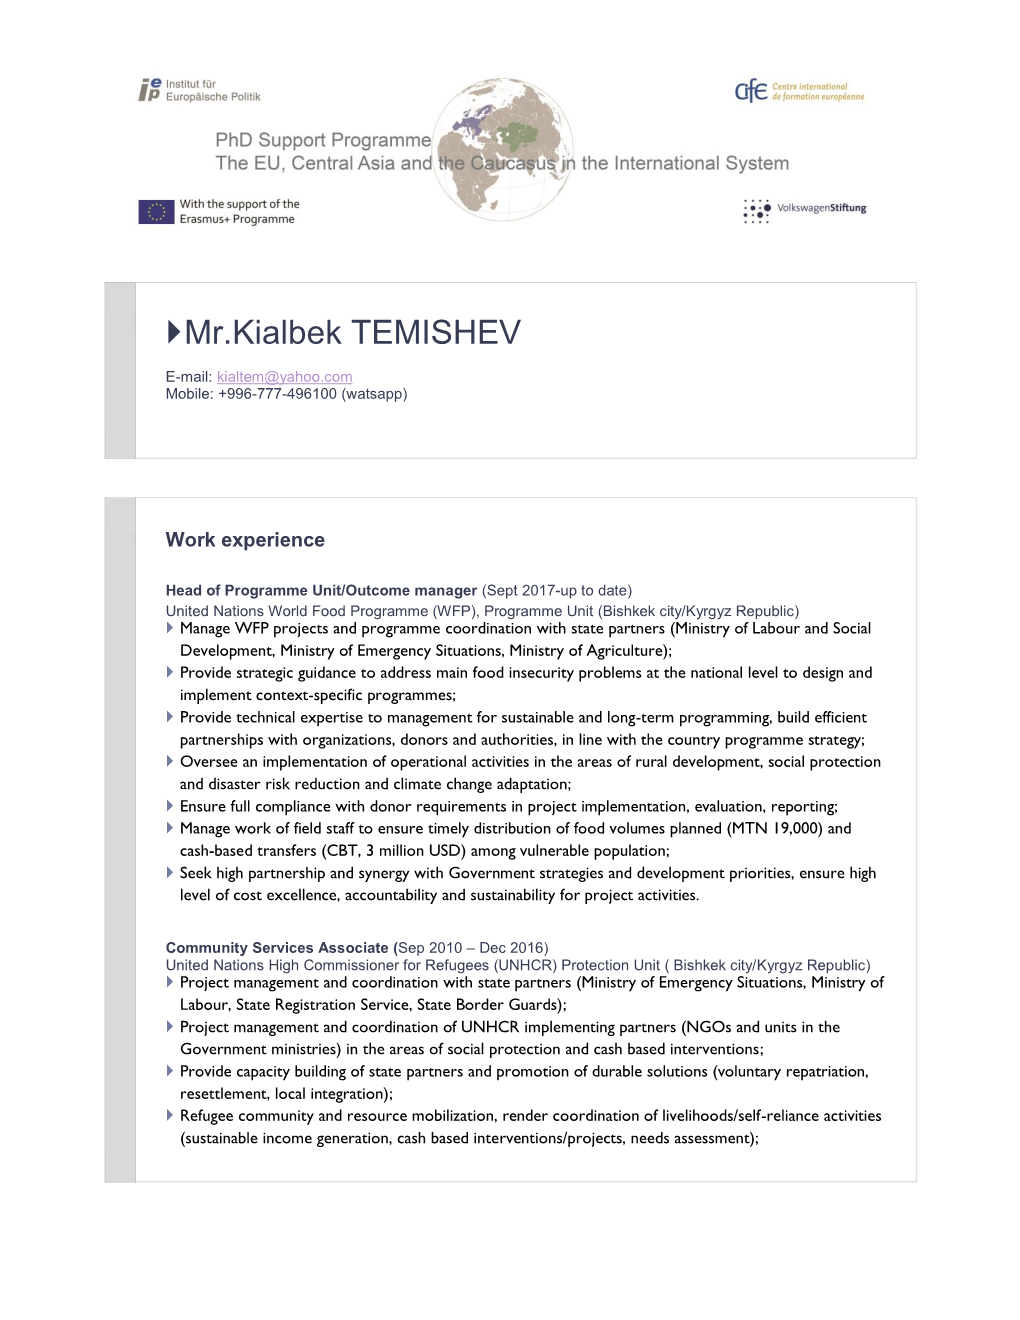 Mr.Kialbek TEMISHEV